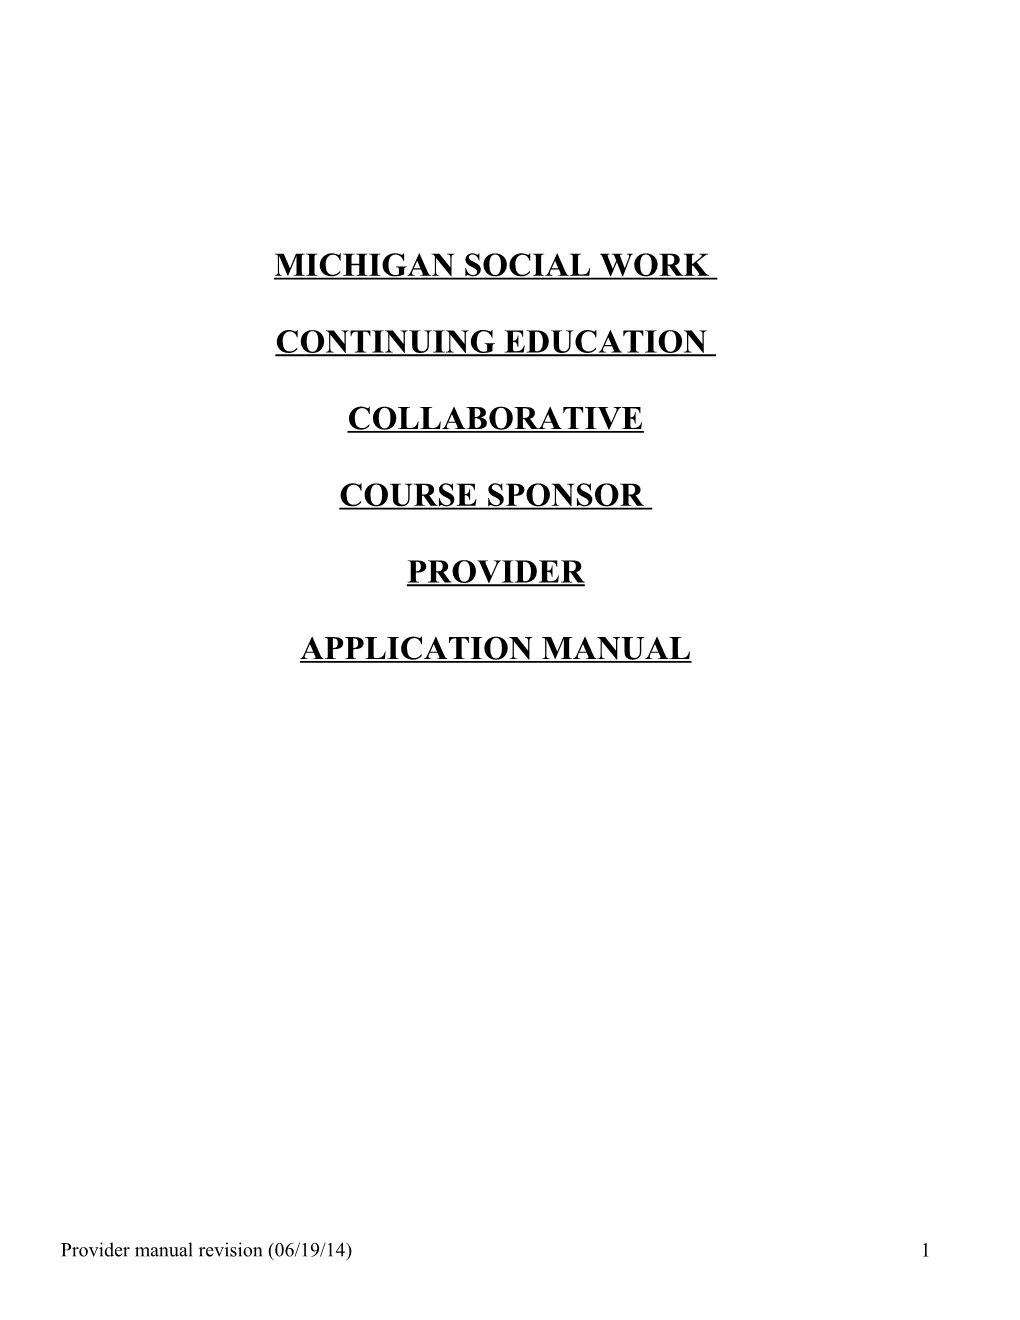 Michigan Social Work